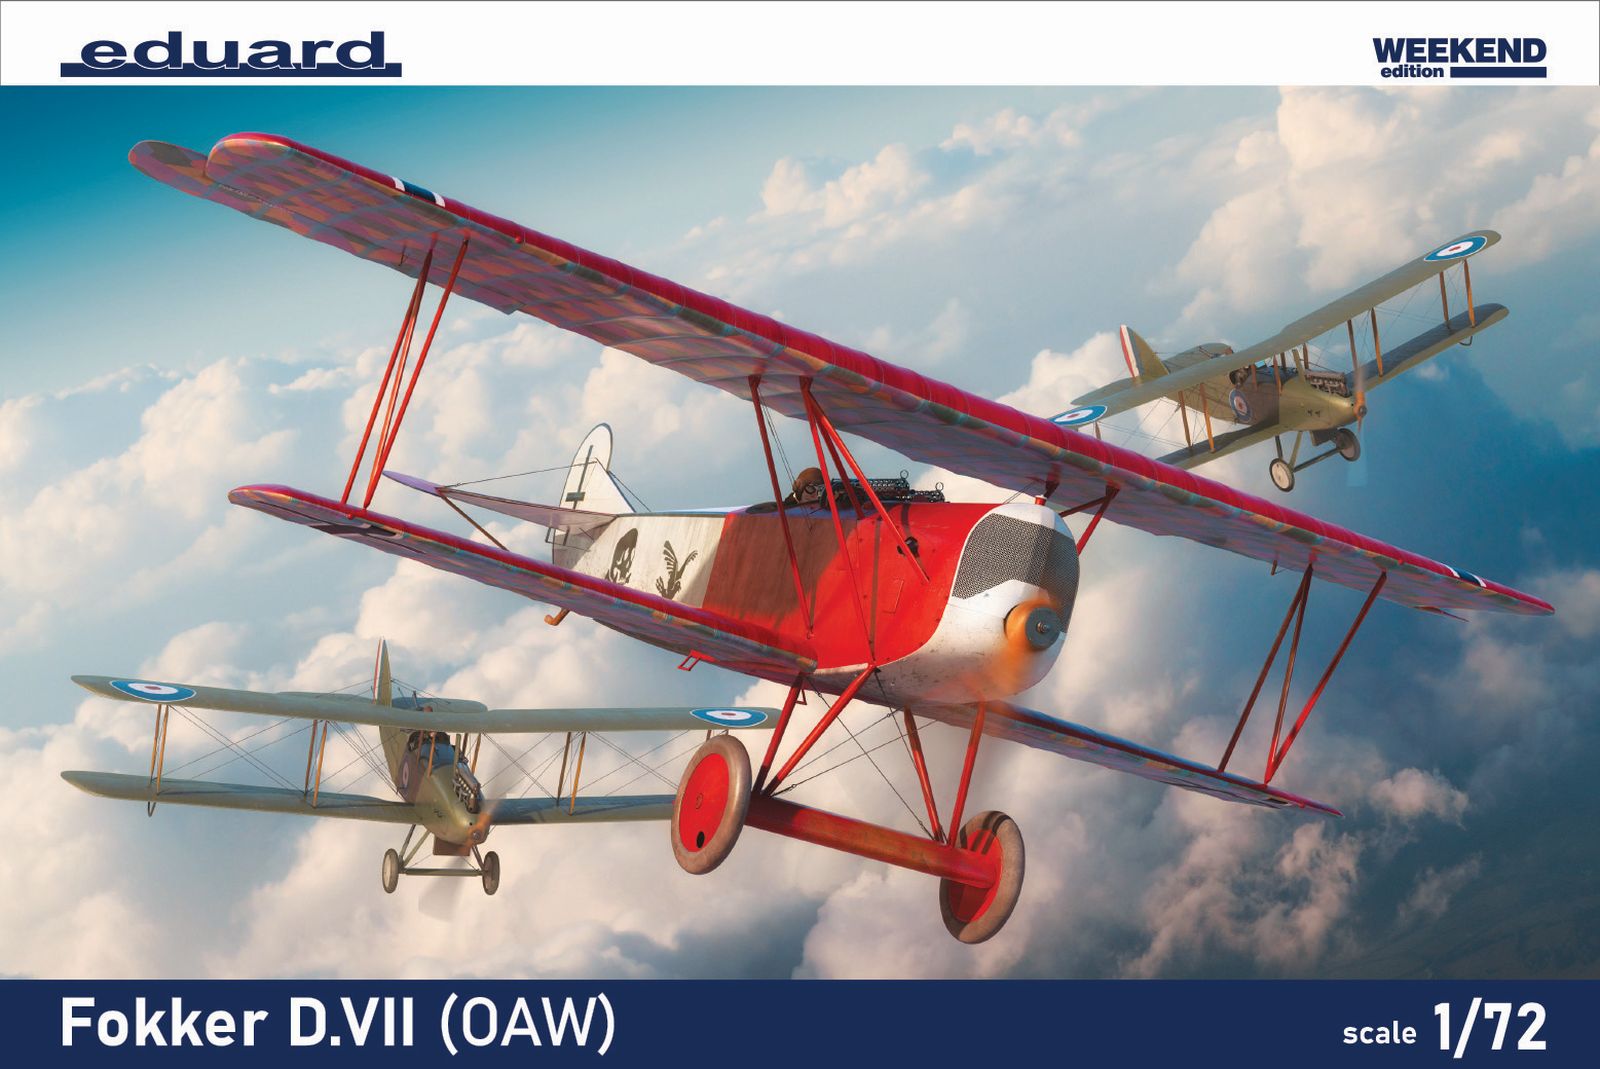 1/72 Fokker D.VII (OAW) - Eduard